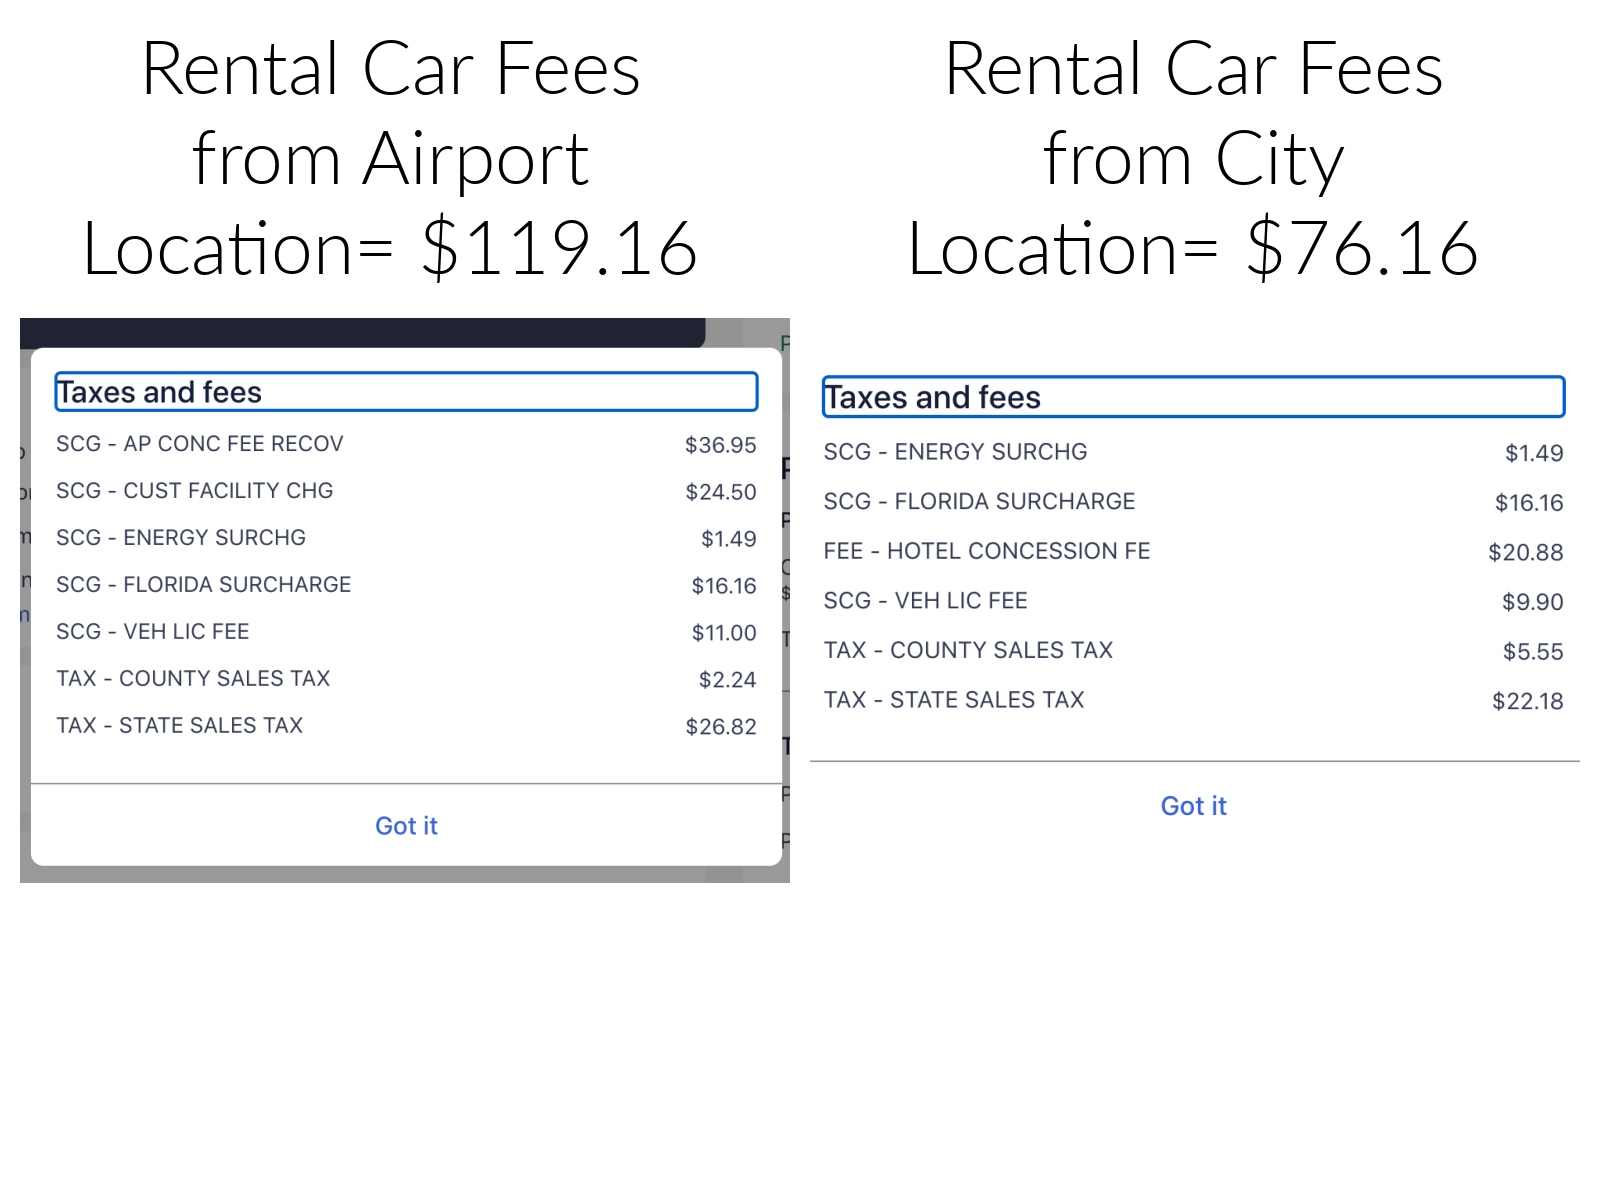 deals on car rentals